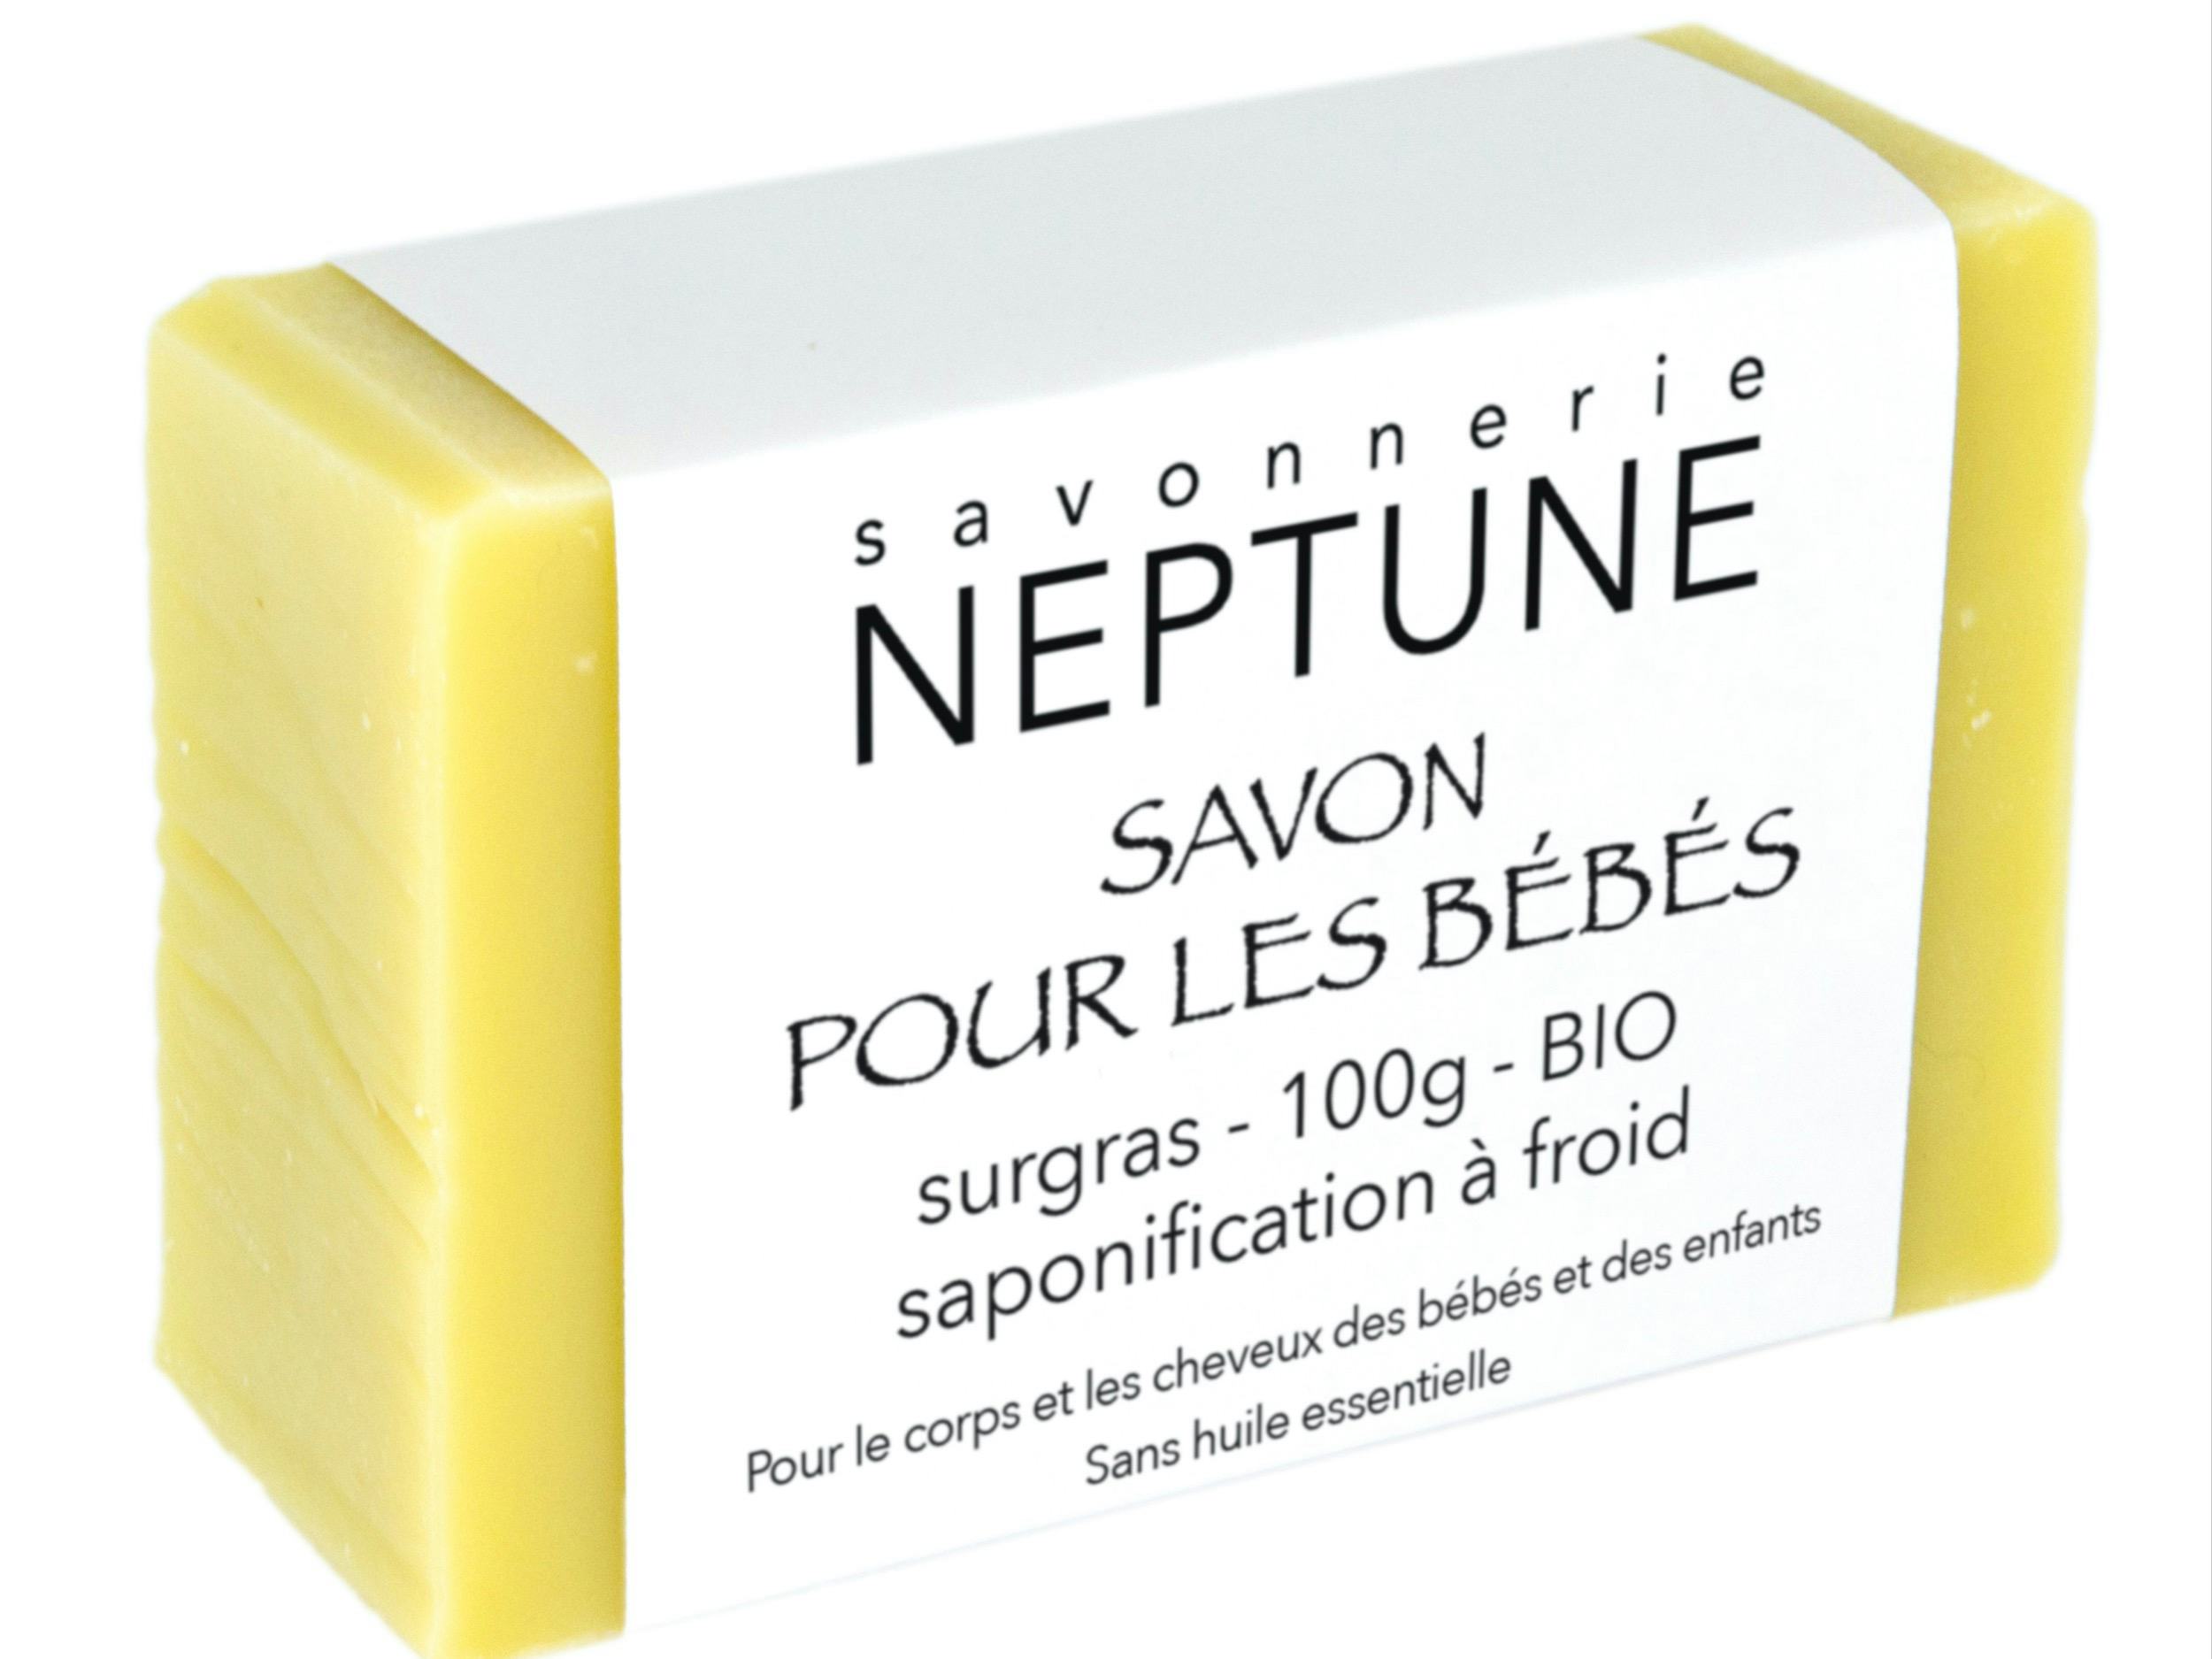 Soap for babies - organic, Savonnerie NEPTUNE, Crésuz, image 2 | Mimelis